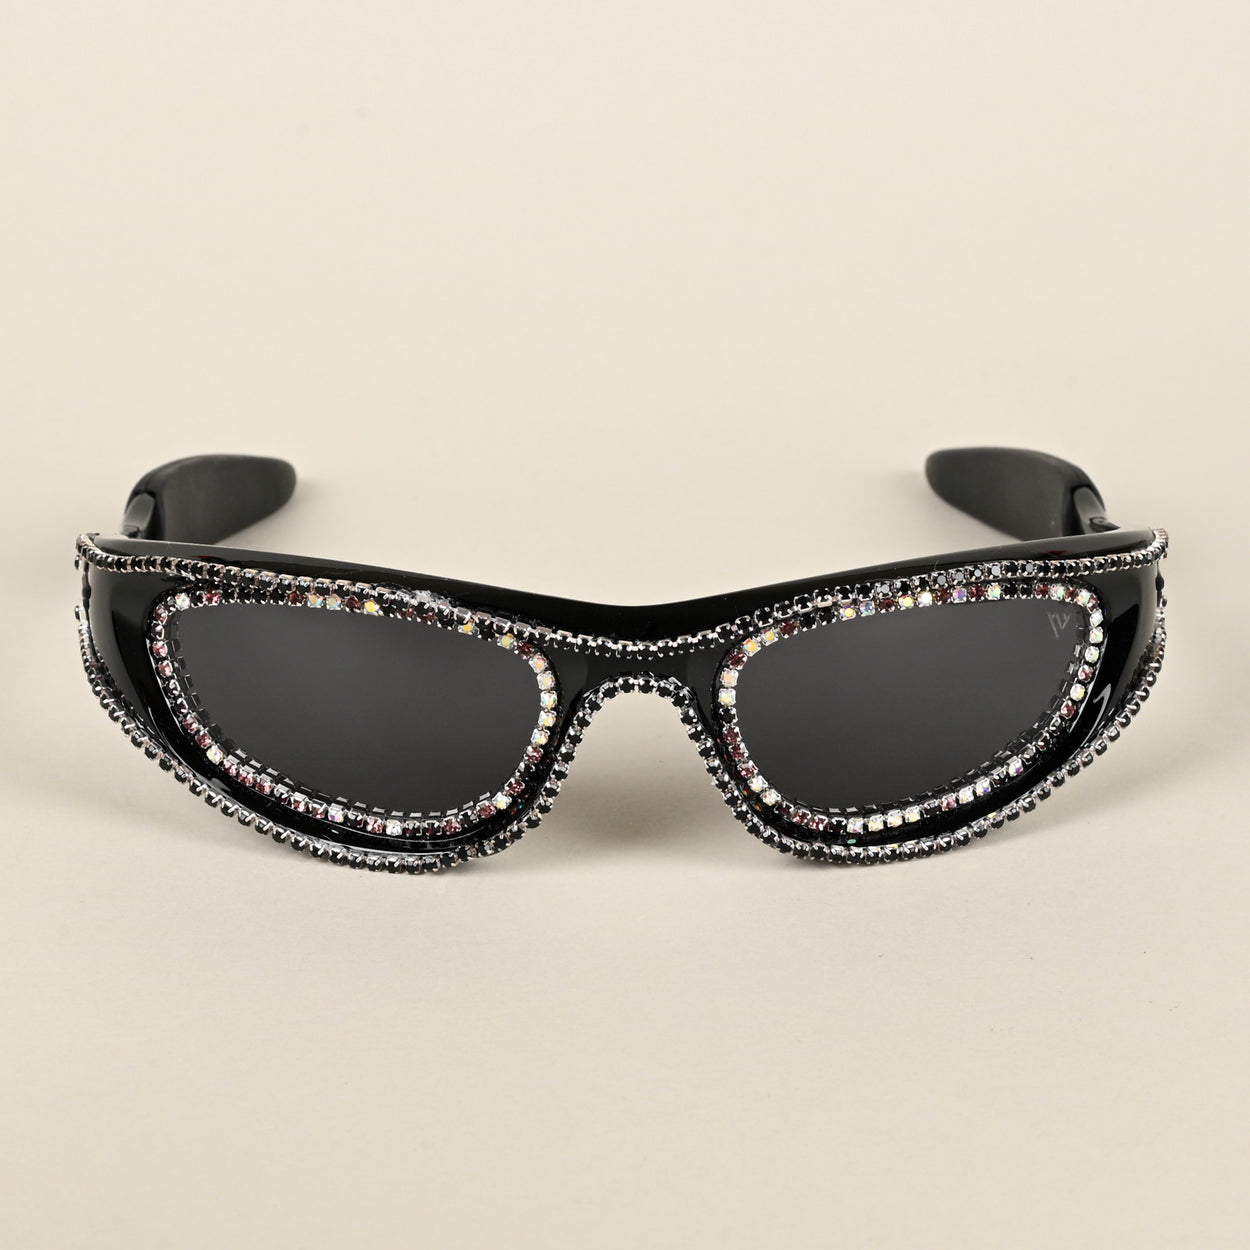 Voyage Black Wrap-Around Polarized Sunglasses for Men & Women (5012PMG4364)